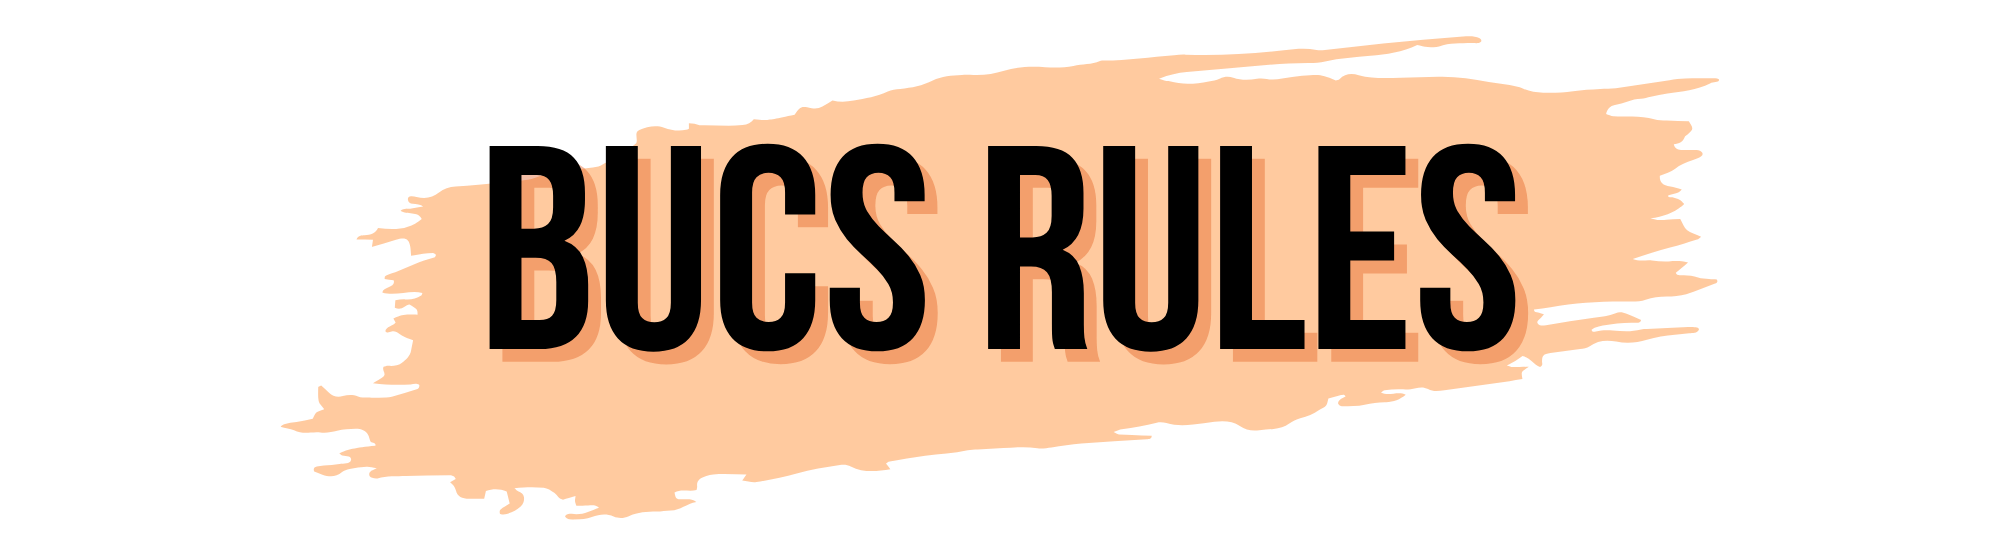 BUCS rules